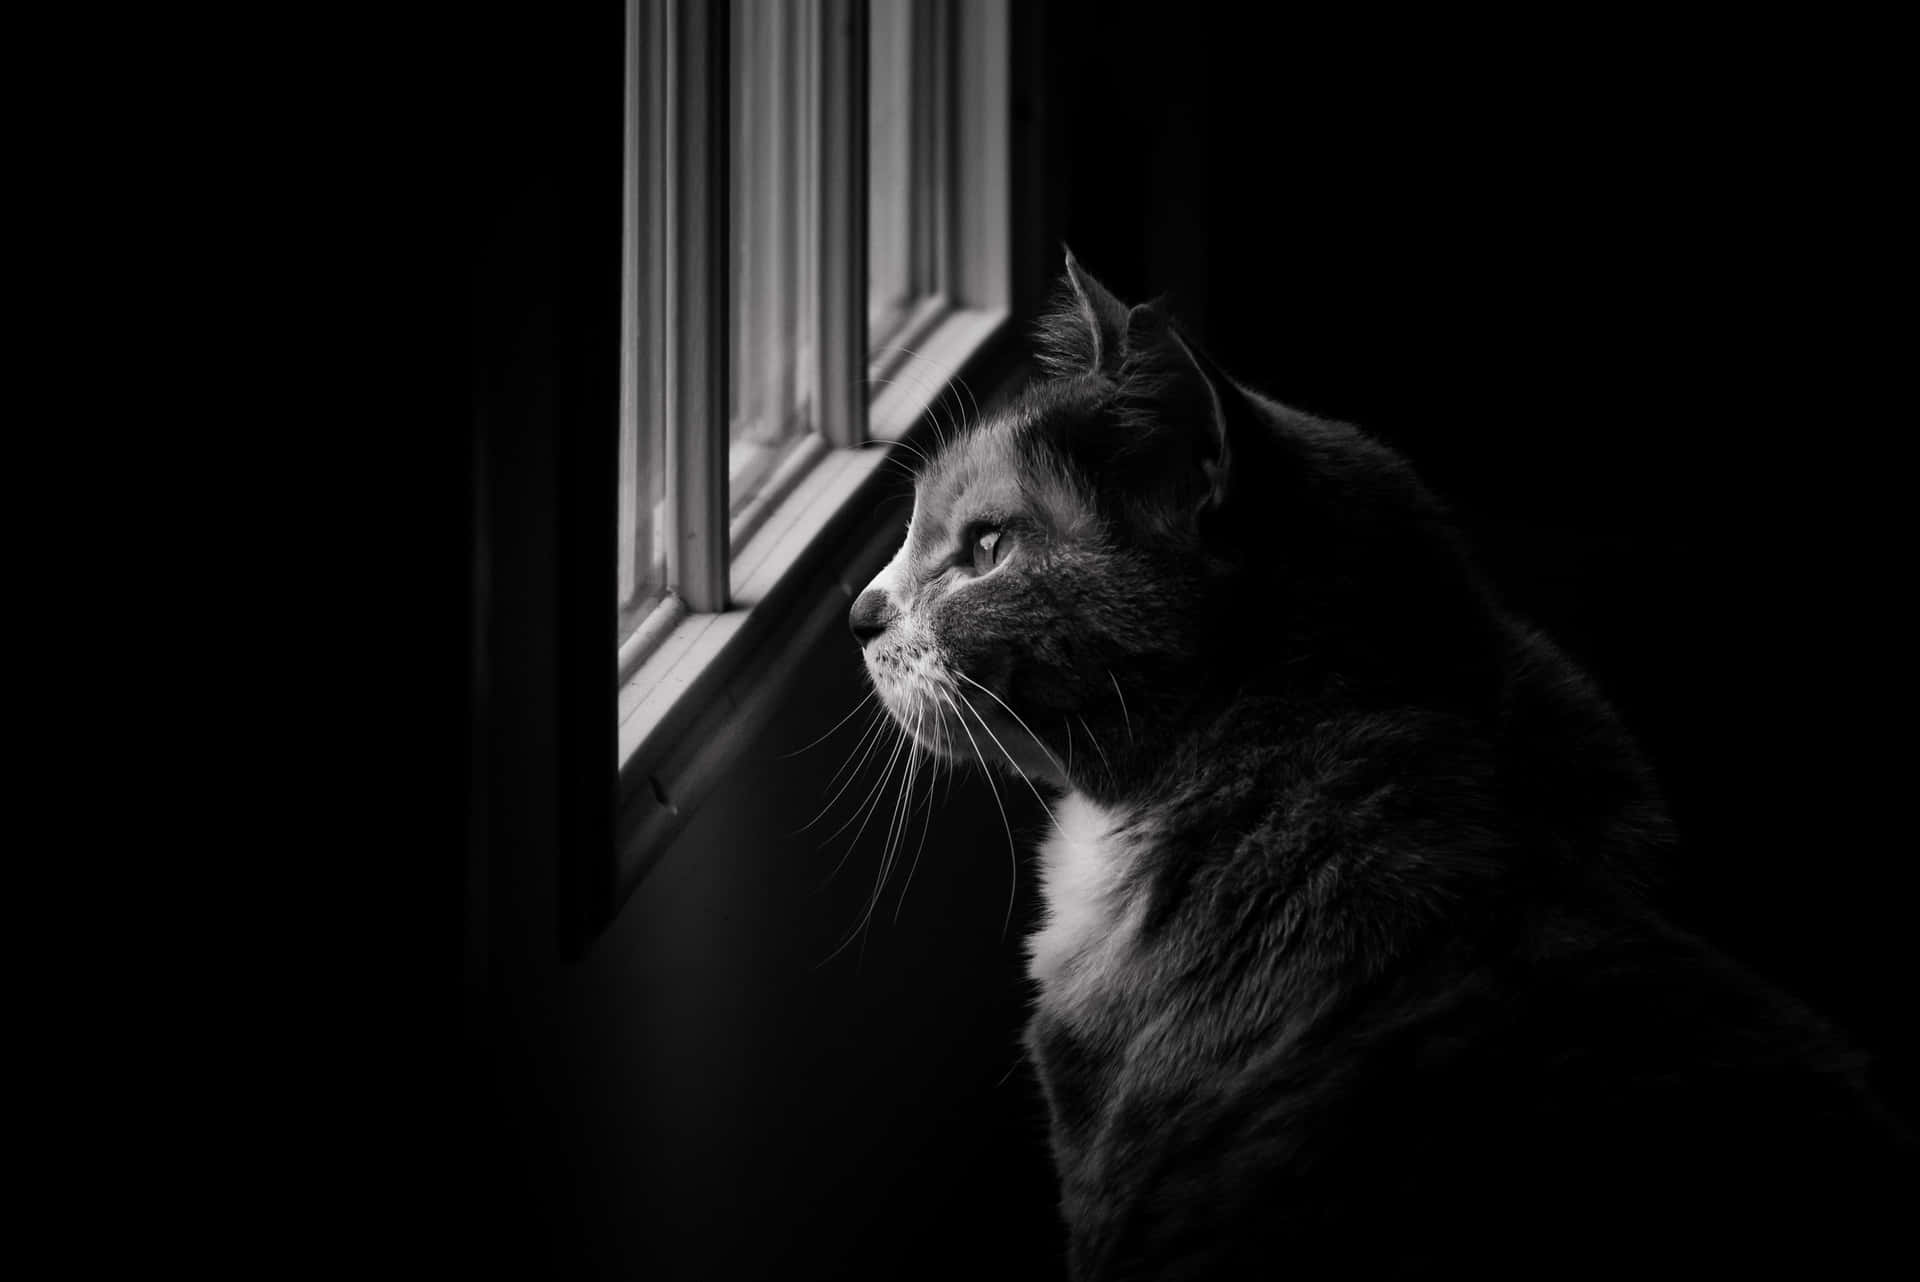 Monochrome Cat Looks Outside Window